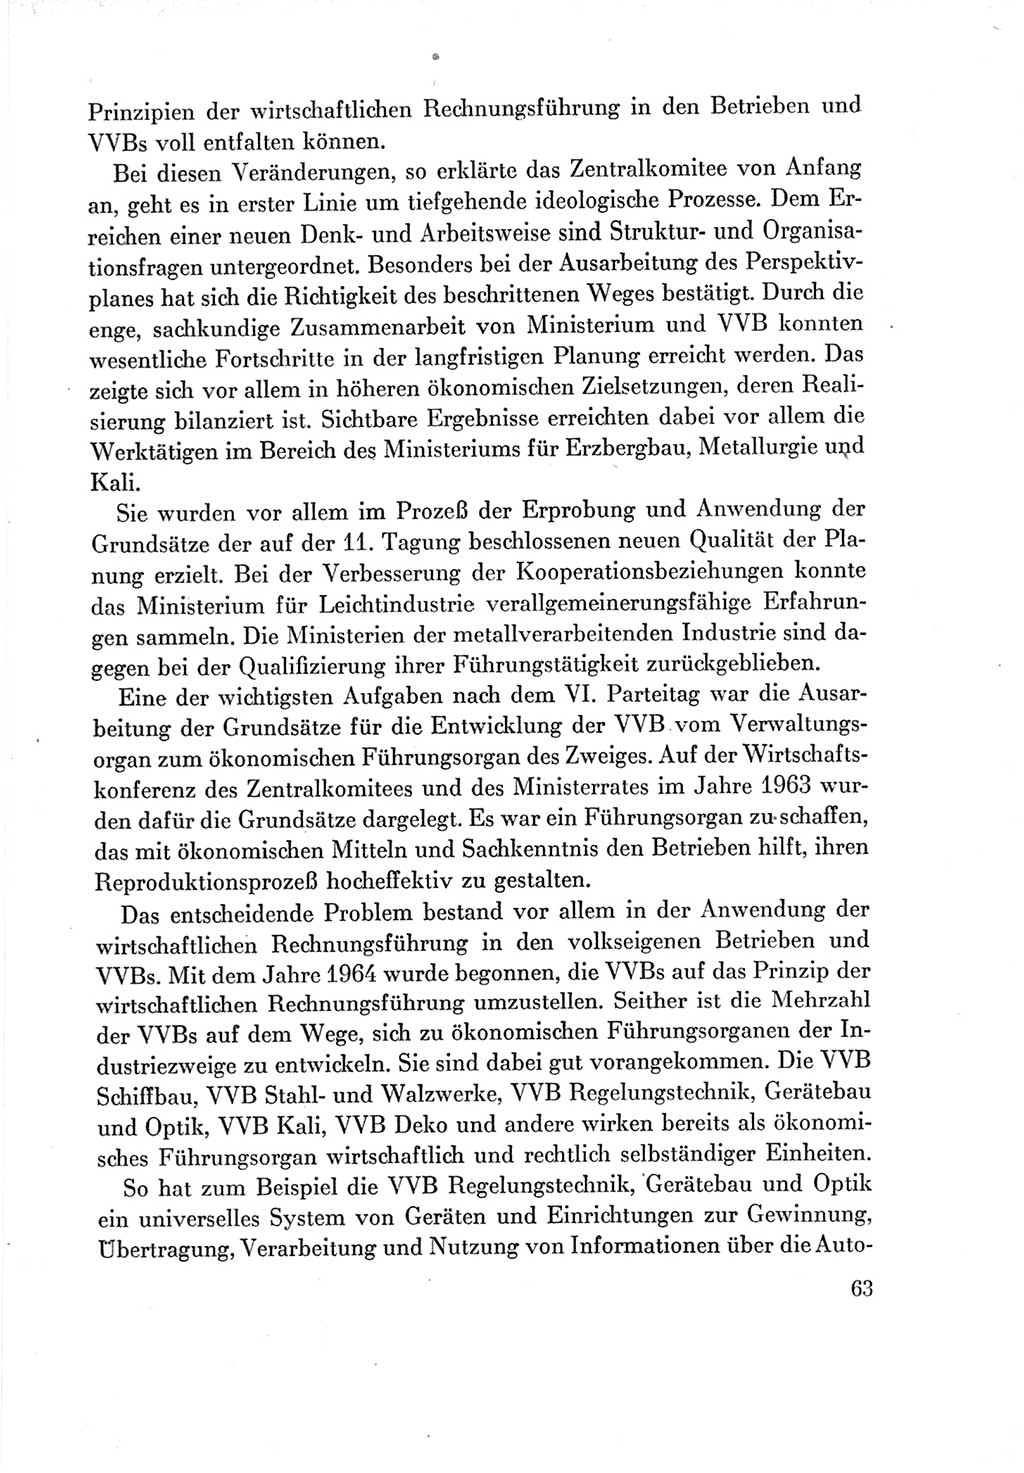 Protokoll der Verhandlungen des Ⅶ. Parteitages der Sozialistischen Einheitspartei Deutschlands (SED) [Deutsche Demokratische Republik (DDR)] 1967, Band Ⅳ, Seite 63 (Prot. Verh. Ⅶ. PT SED DDR 1967, Bd. Ⅳ, S. 63)